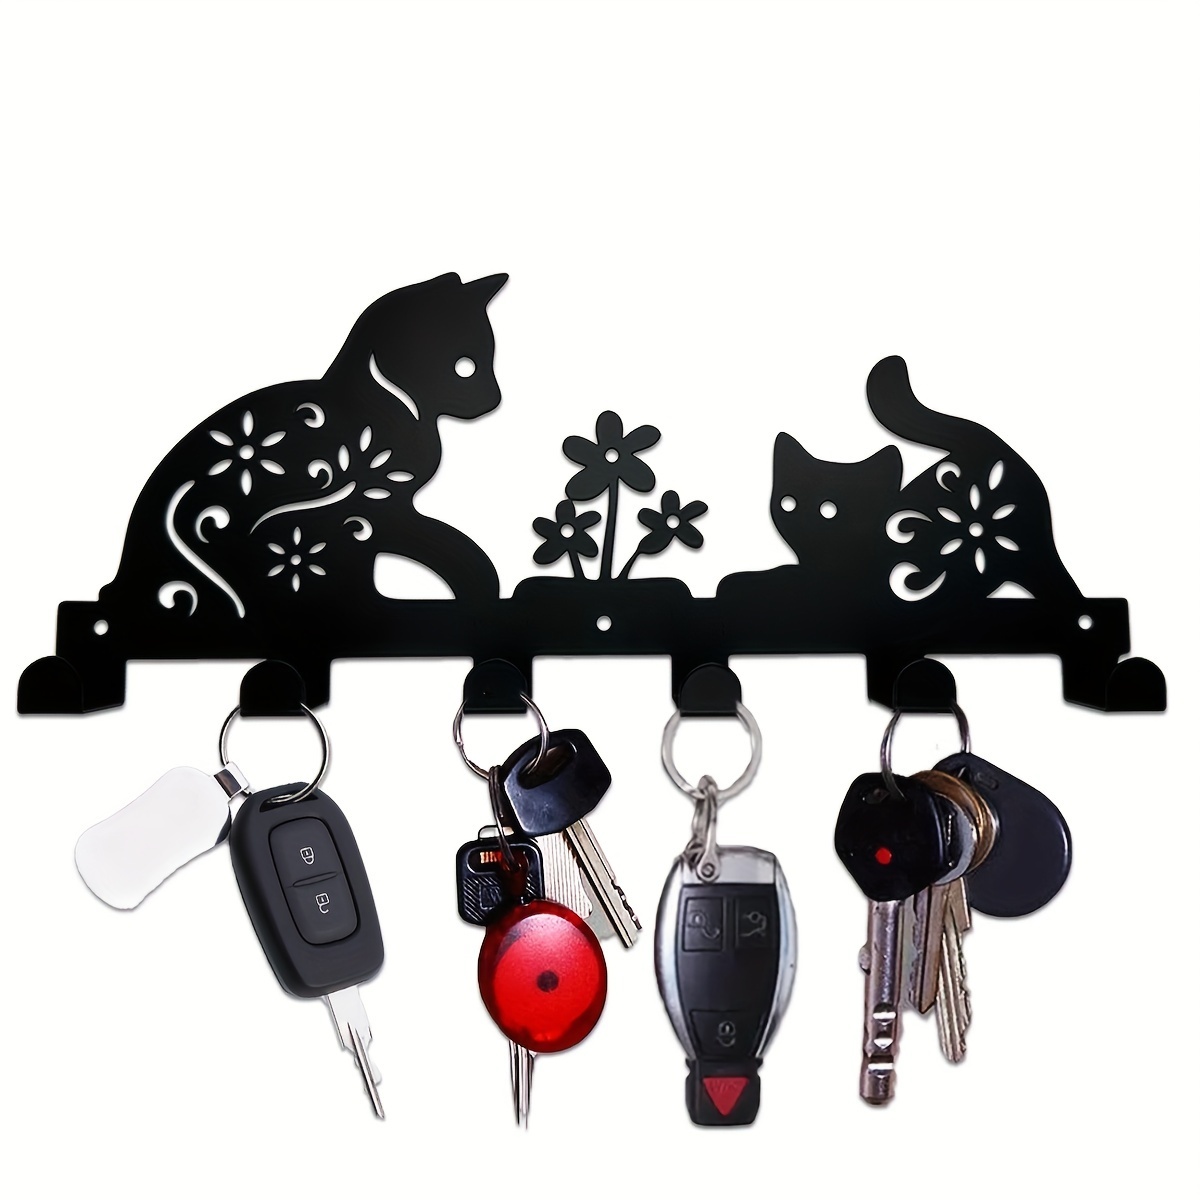 Porte-clés mural avec crochets à clés pour couloir, cuisine, salon